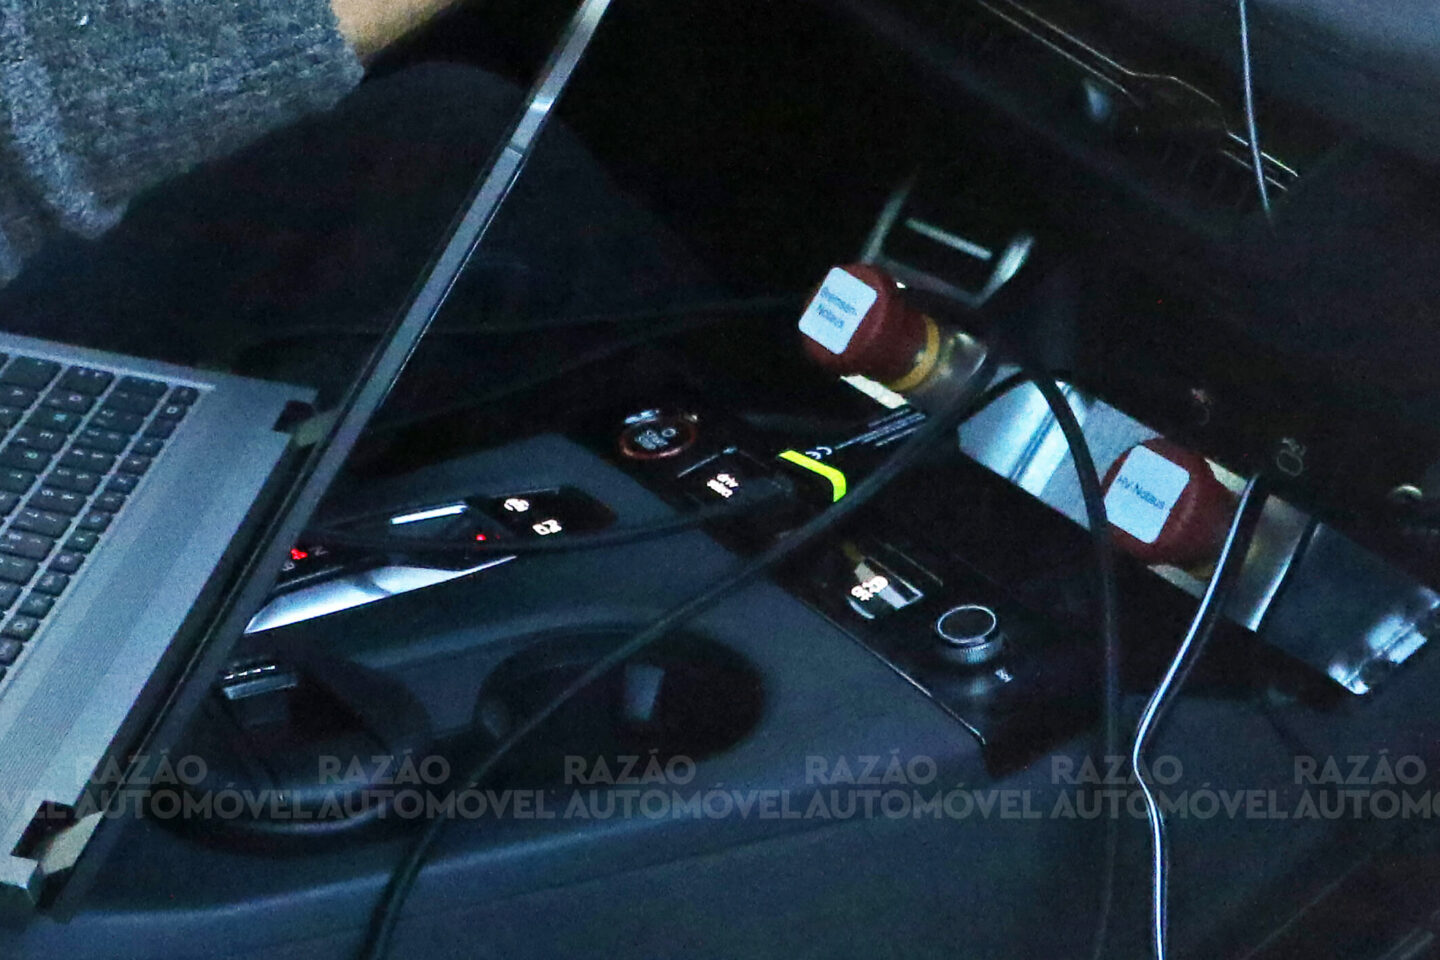 Audi Q6 e-tron fotos-espia pormenor consola central